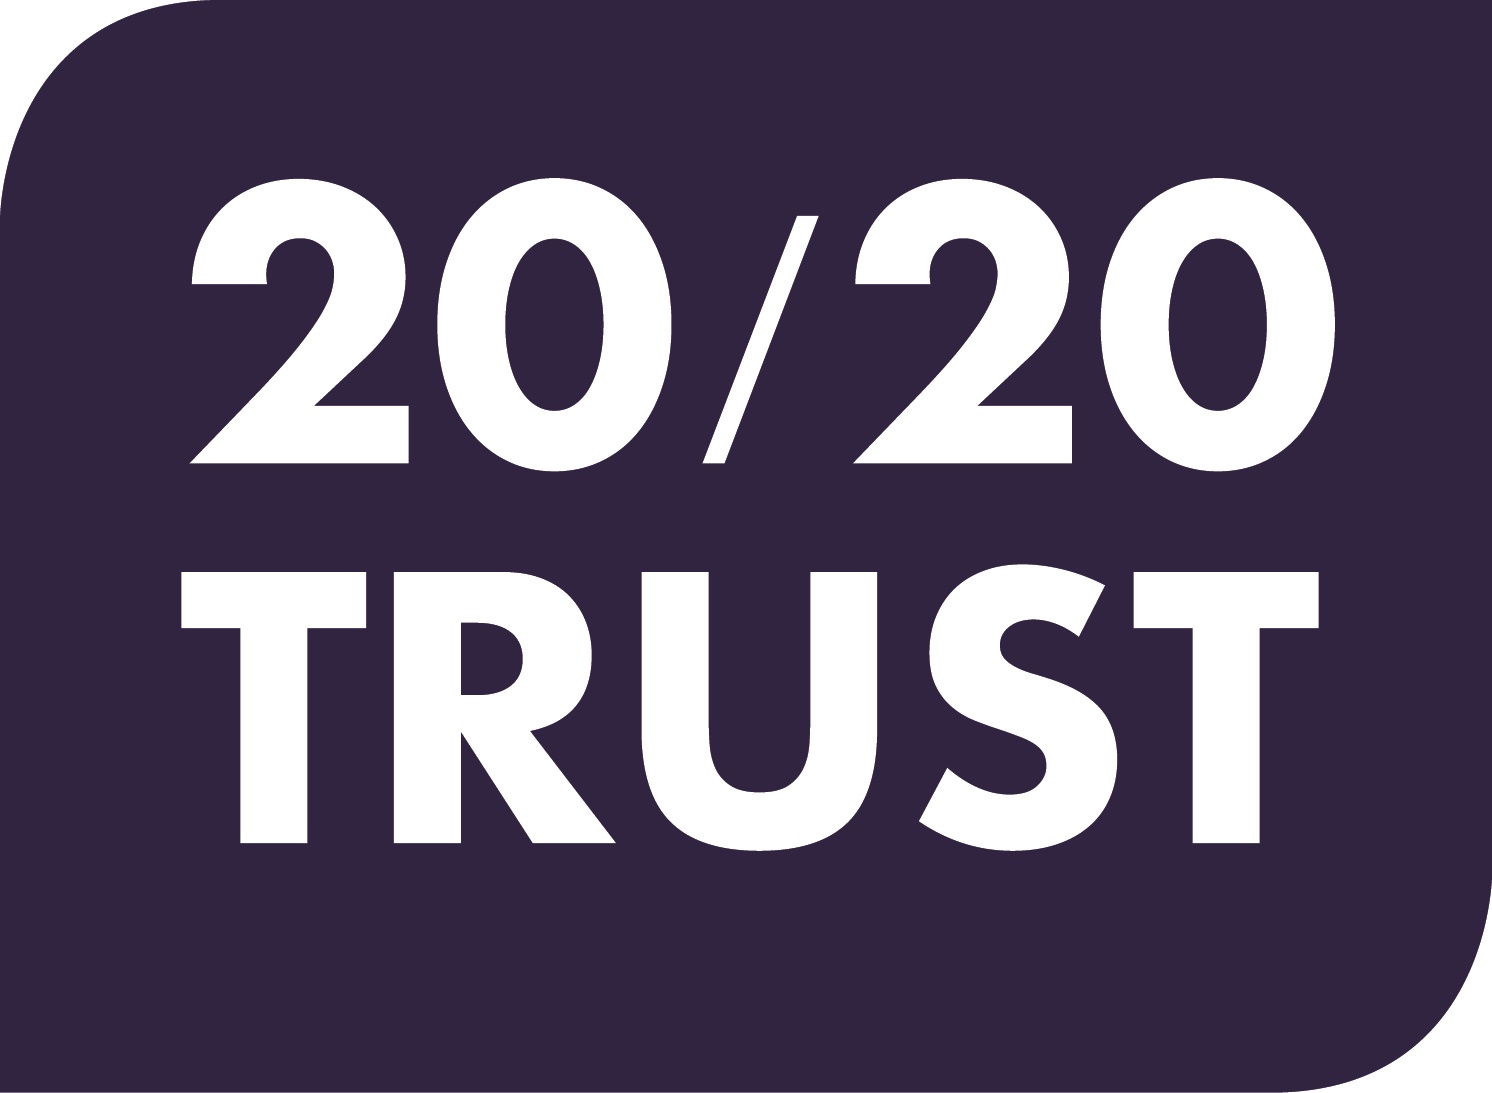 20/20 Trust